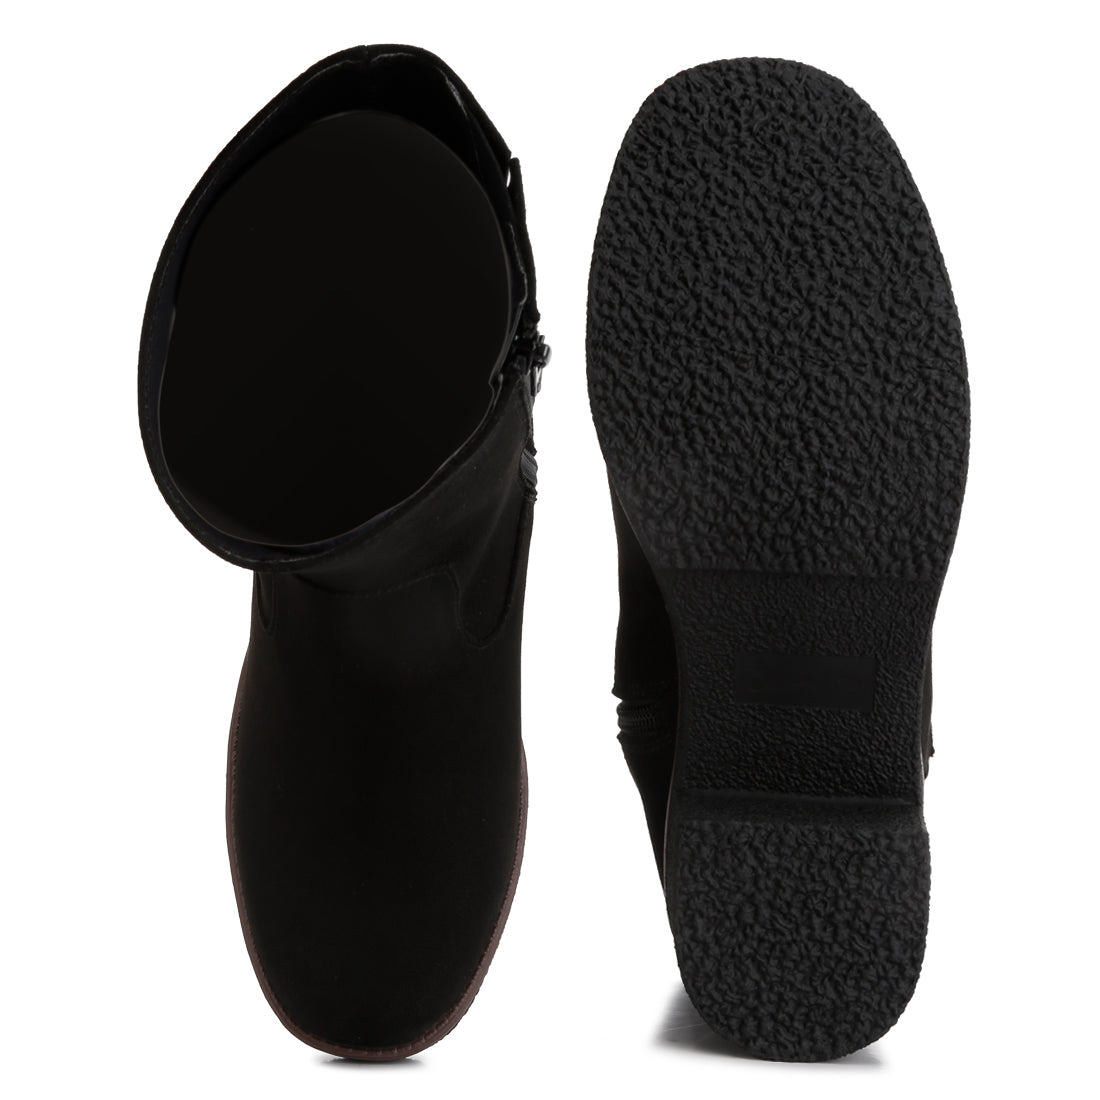 block heel micro suede boots#color_black